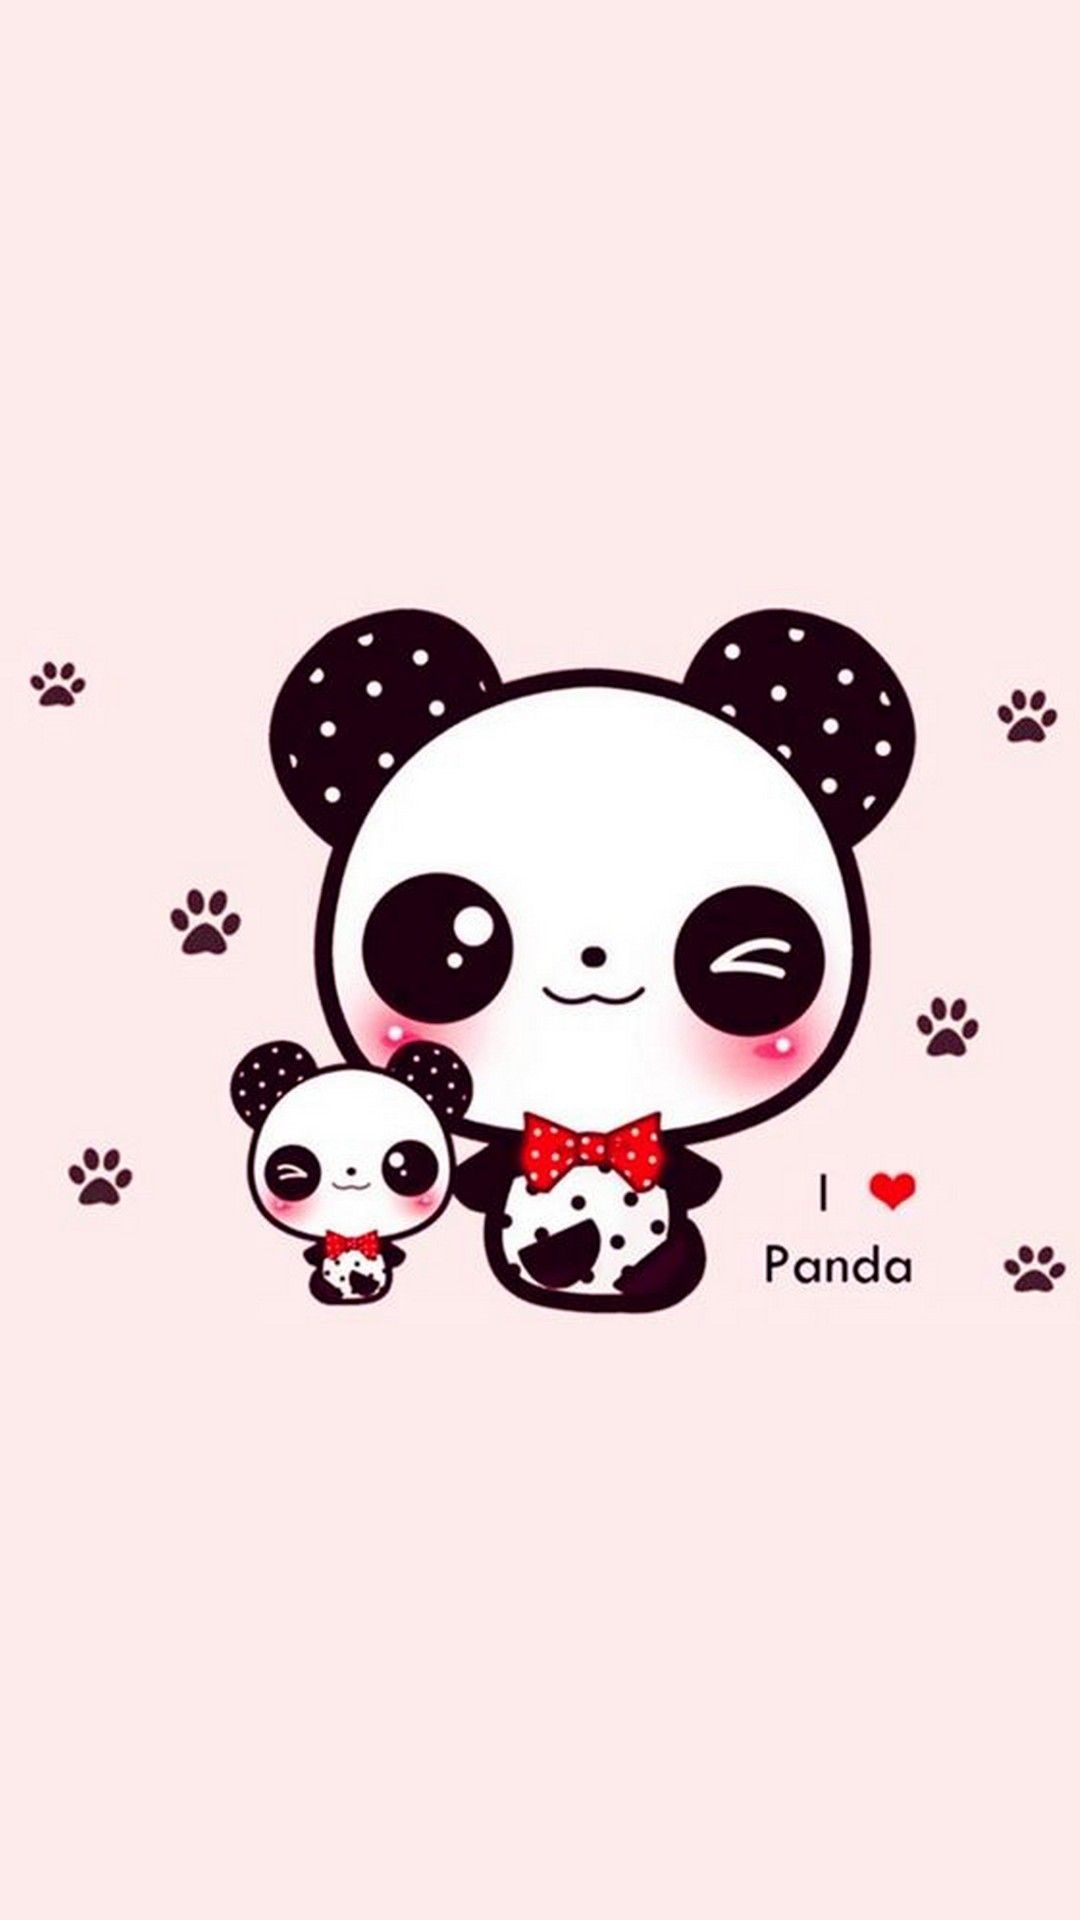 A panda wallpaper for your phone - Panda